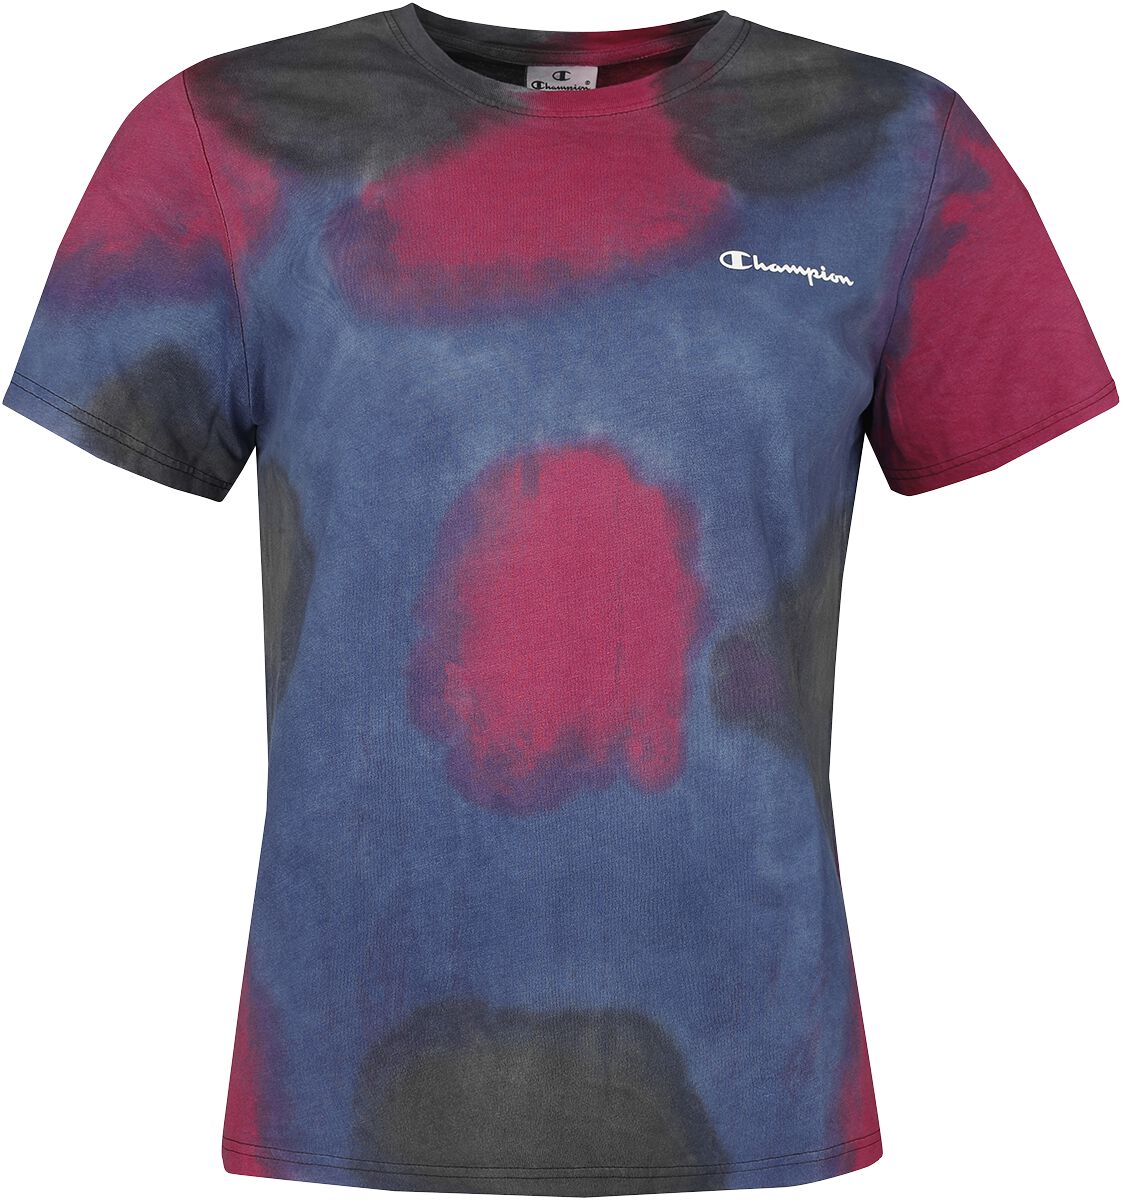 T-Shirt Manches courtes de Champion - Color Story - XS à M - pour Femme - multicolore